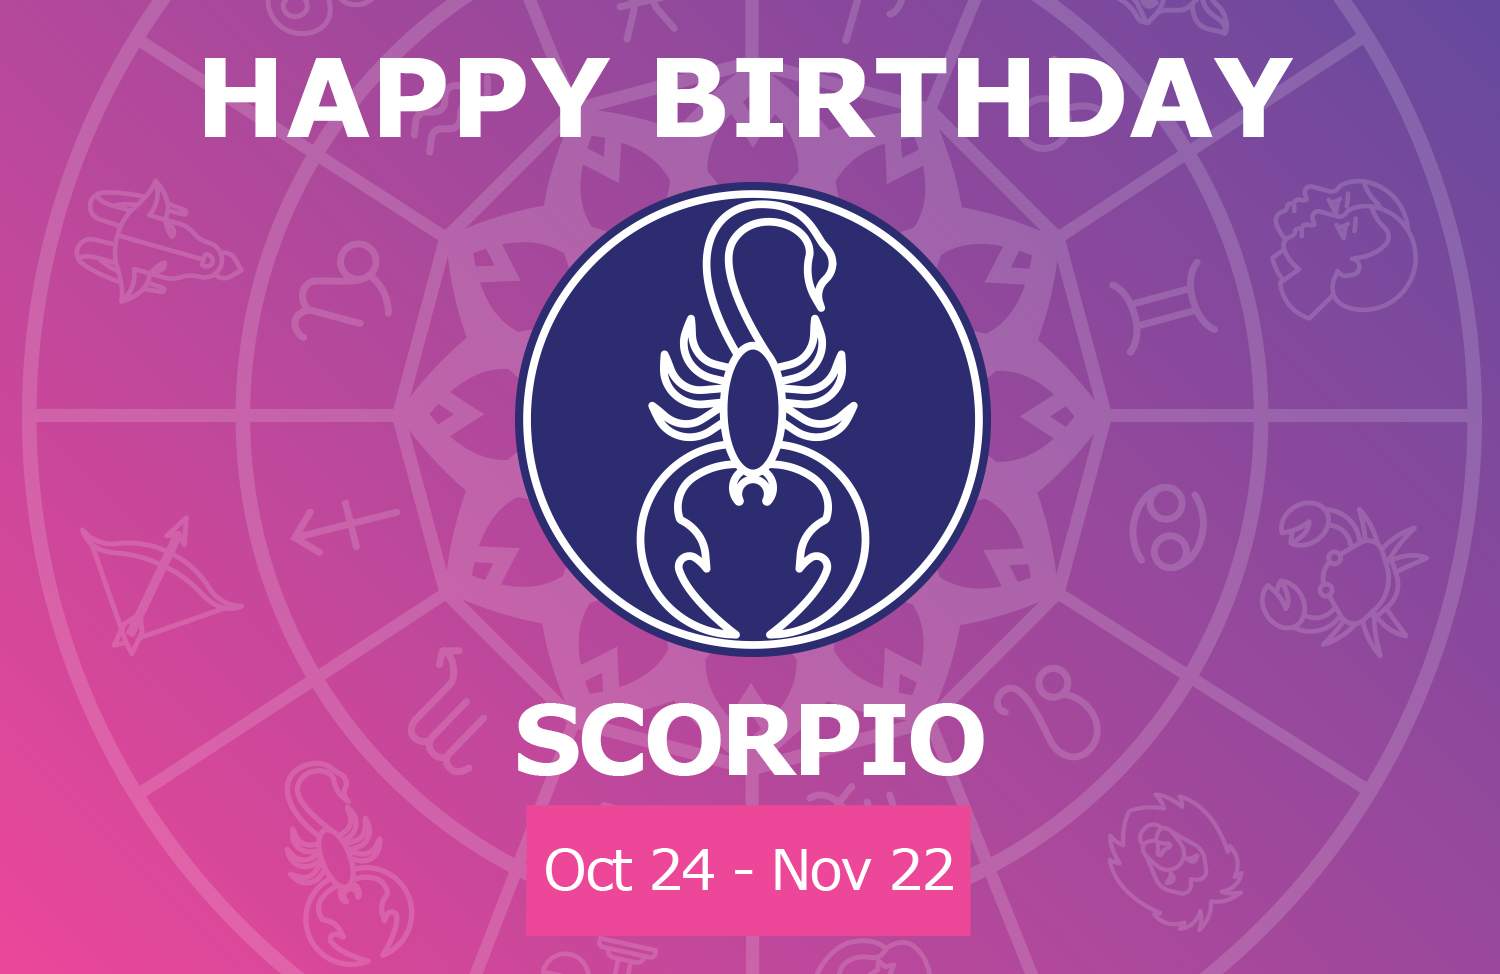 Happy Birthday Scorpio! 